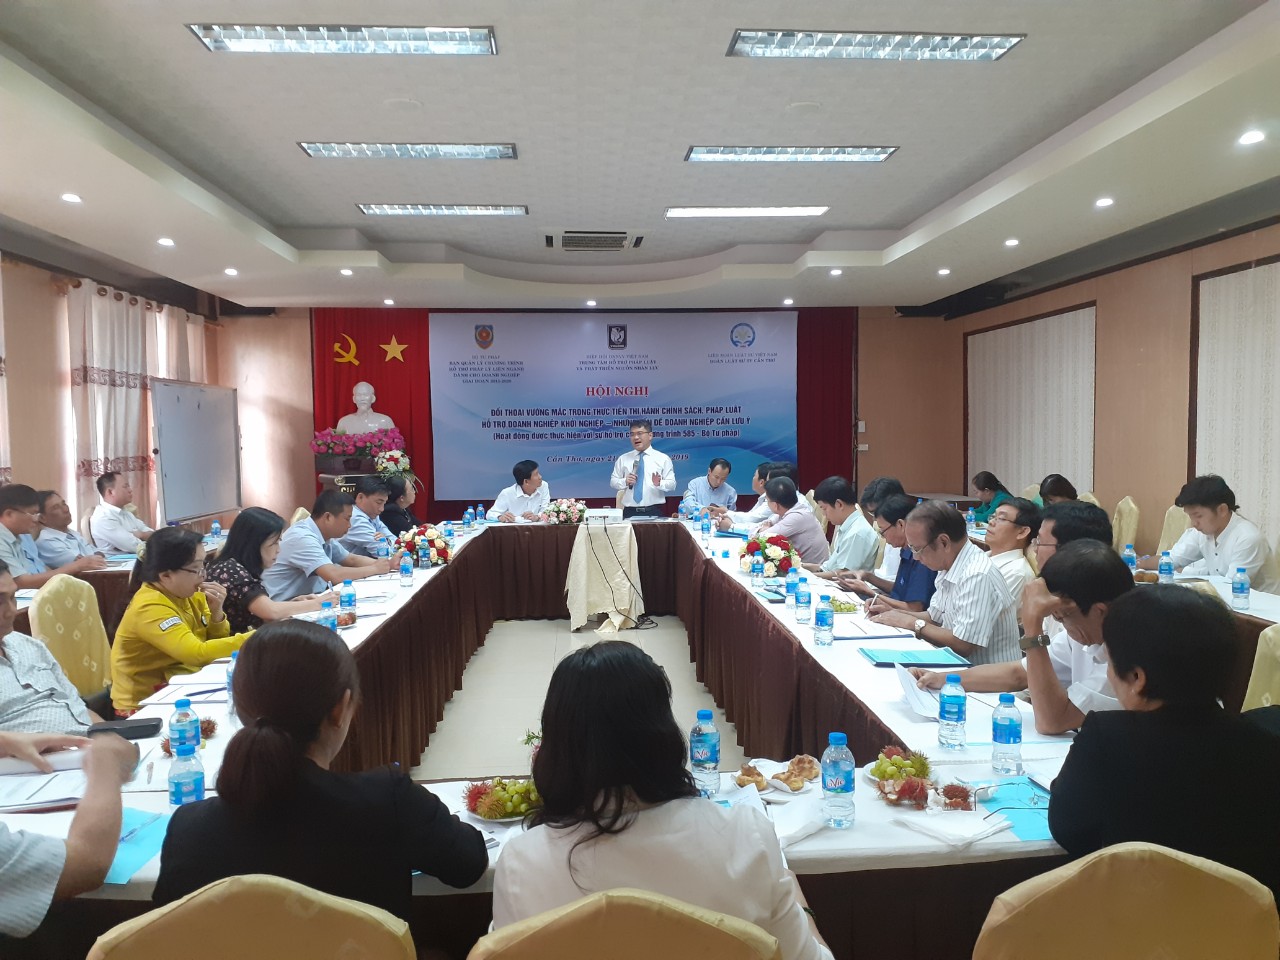 Hiệp hội doanh nghiệp nhỏ và vừa Việt Nam tổ chức Hội nghị đối thoại Luật sư và Doanh nghiệp về thực hiện chính sách, pháp luật hỗ trợ doanh nghiệp khởi nghiệp tại Cần Thơ